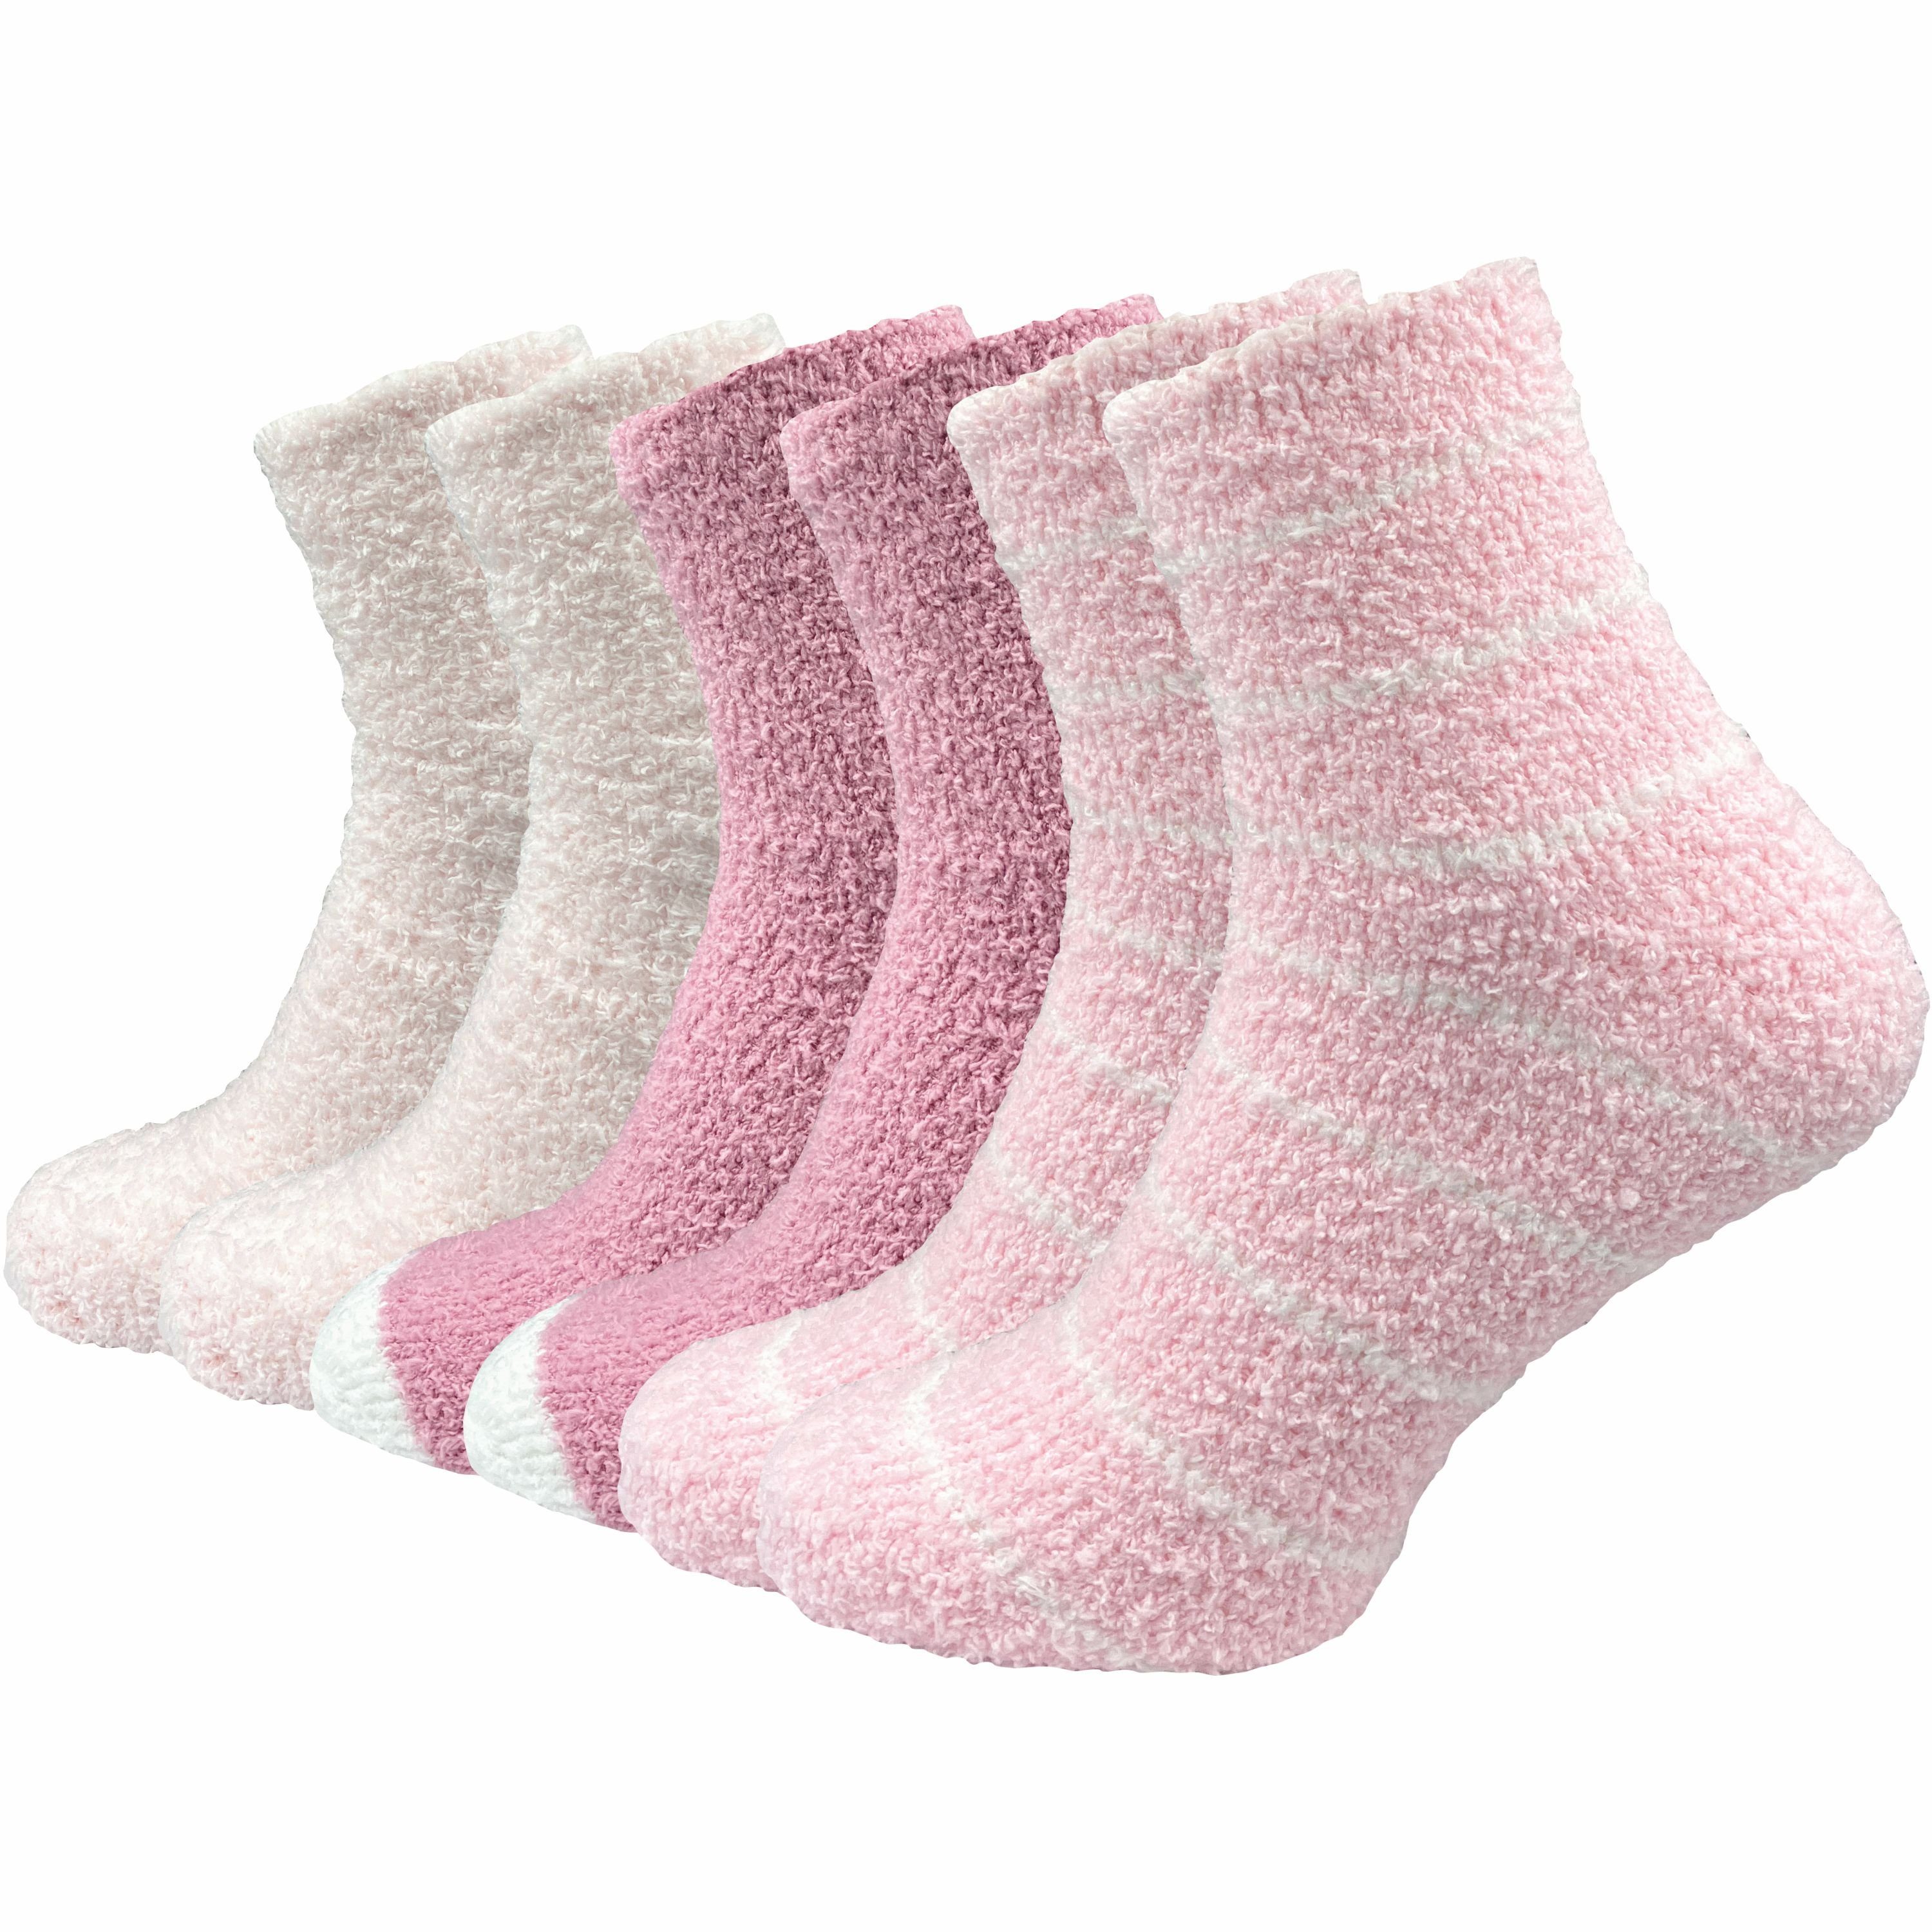 GAWILO Kuschelsocken für Damen für warme Füße an kalten Tagen - extra weich & flauschig (6 Paar) Haussocken aus flauschigem Material für optimalen Tragekomfort rosa